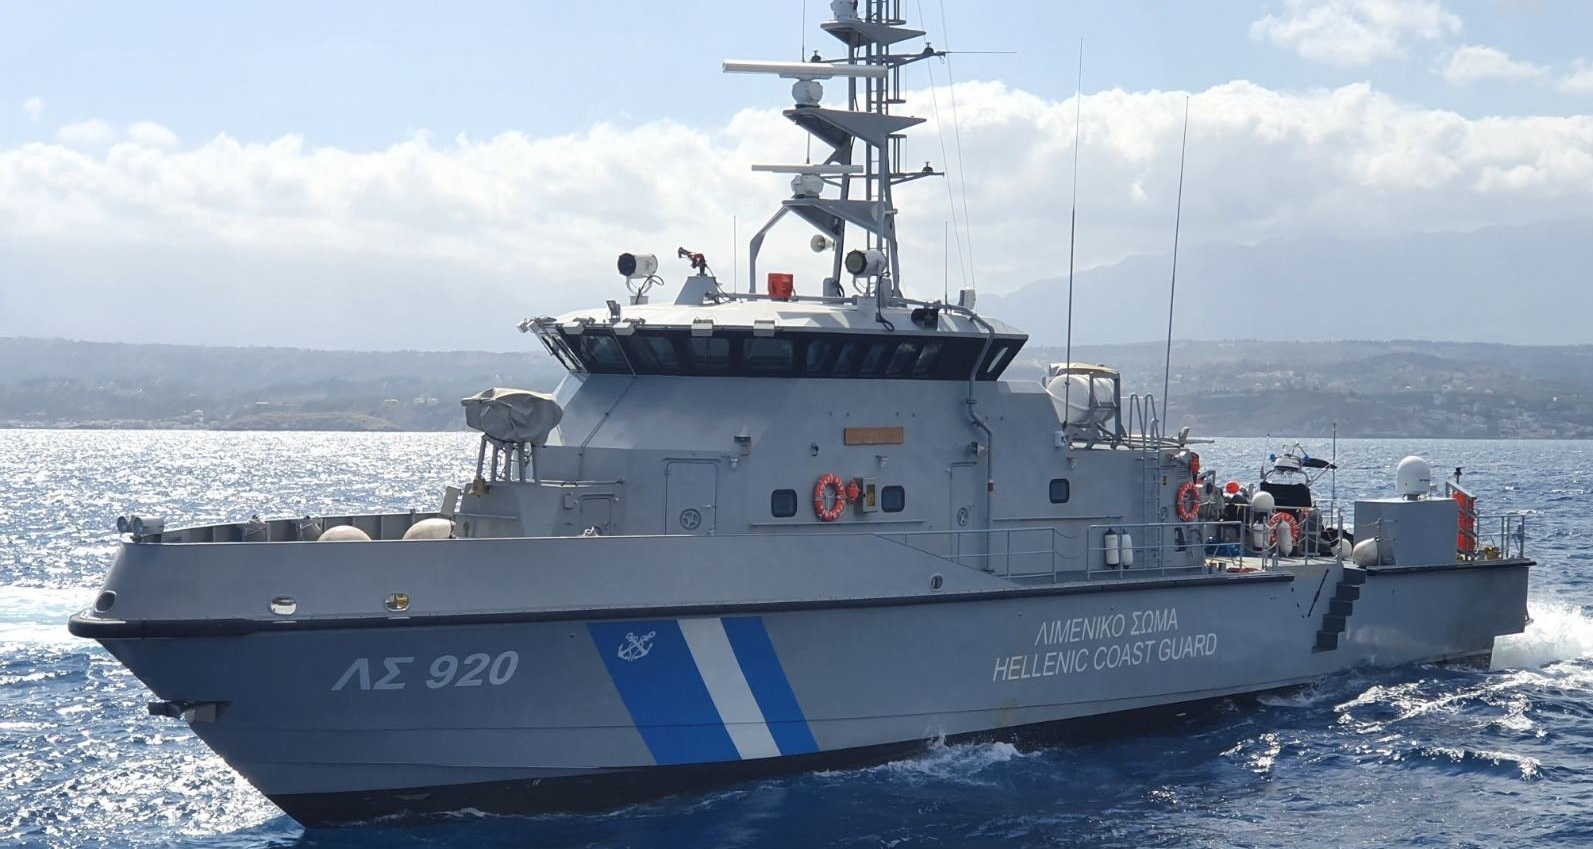 Ολοκαίνουργιο περιπολικό σκάφος του Λ.Σ. συνοδεύει μουσουλμάνους αλλοδαπούς στις ελληνικές ακτές